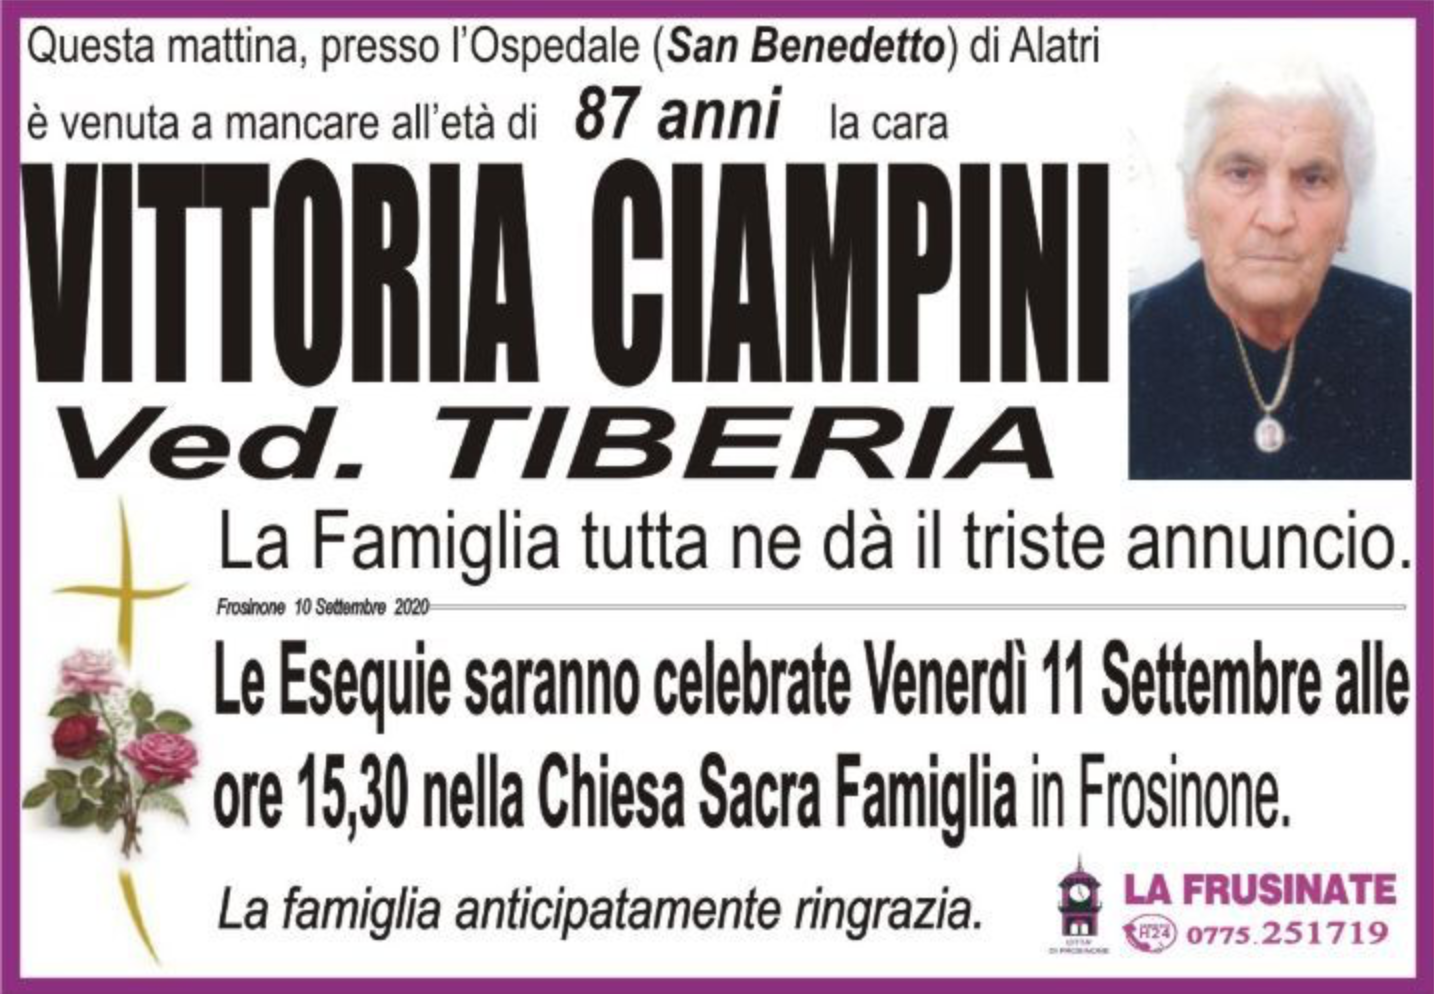 Vittoria Ciampini